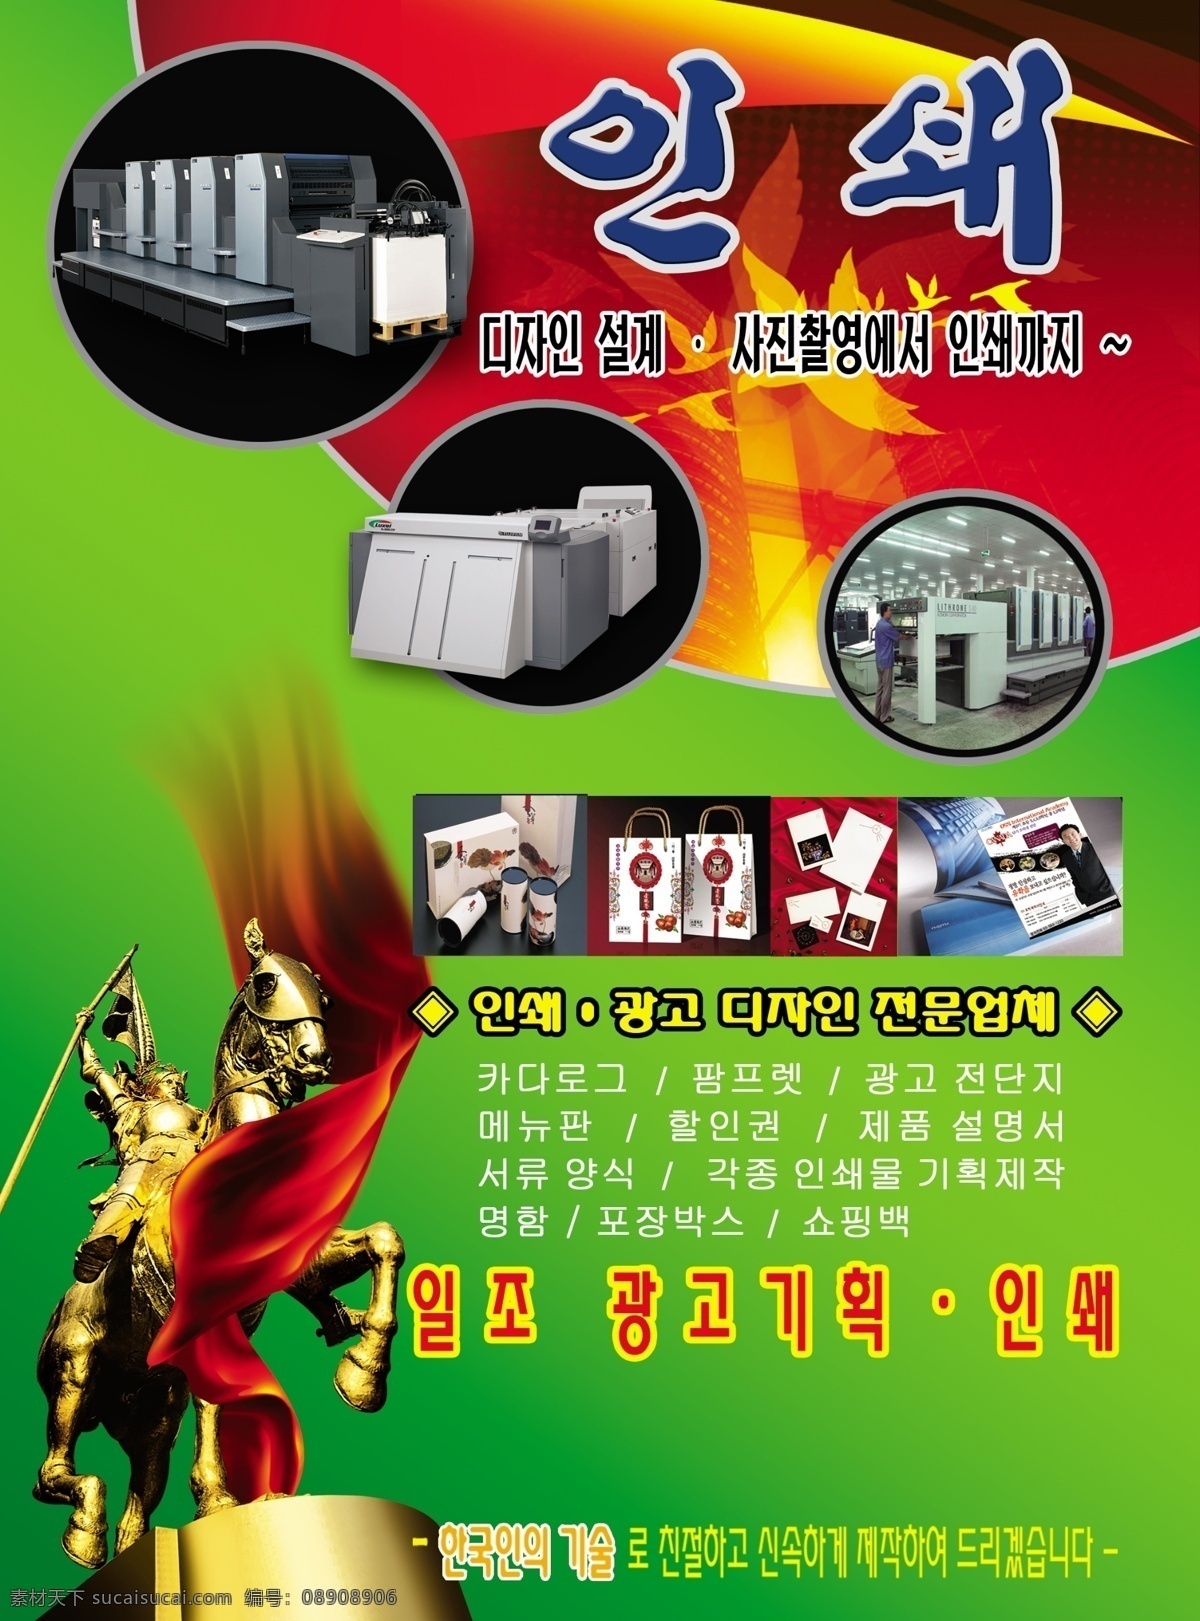 韩国 印刷 机器 广告 印刷机器 骑士 战马 绿色